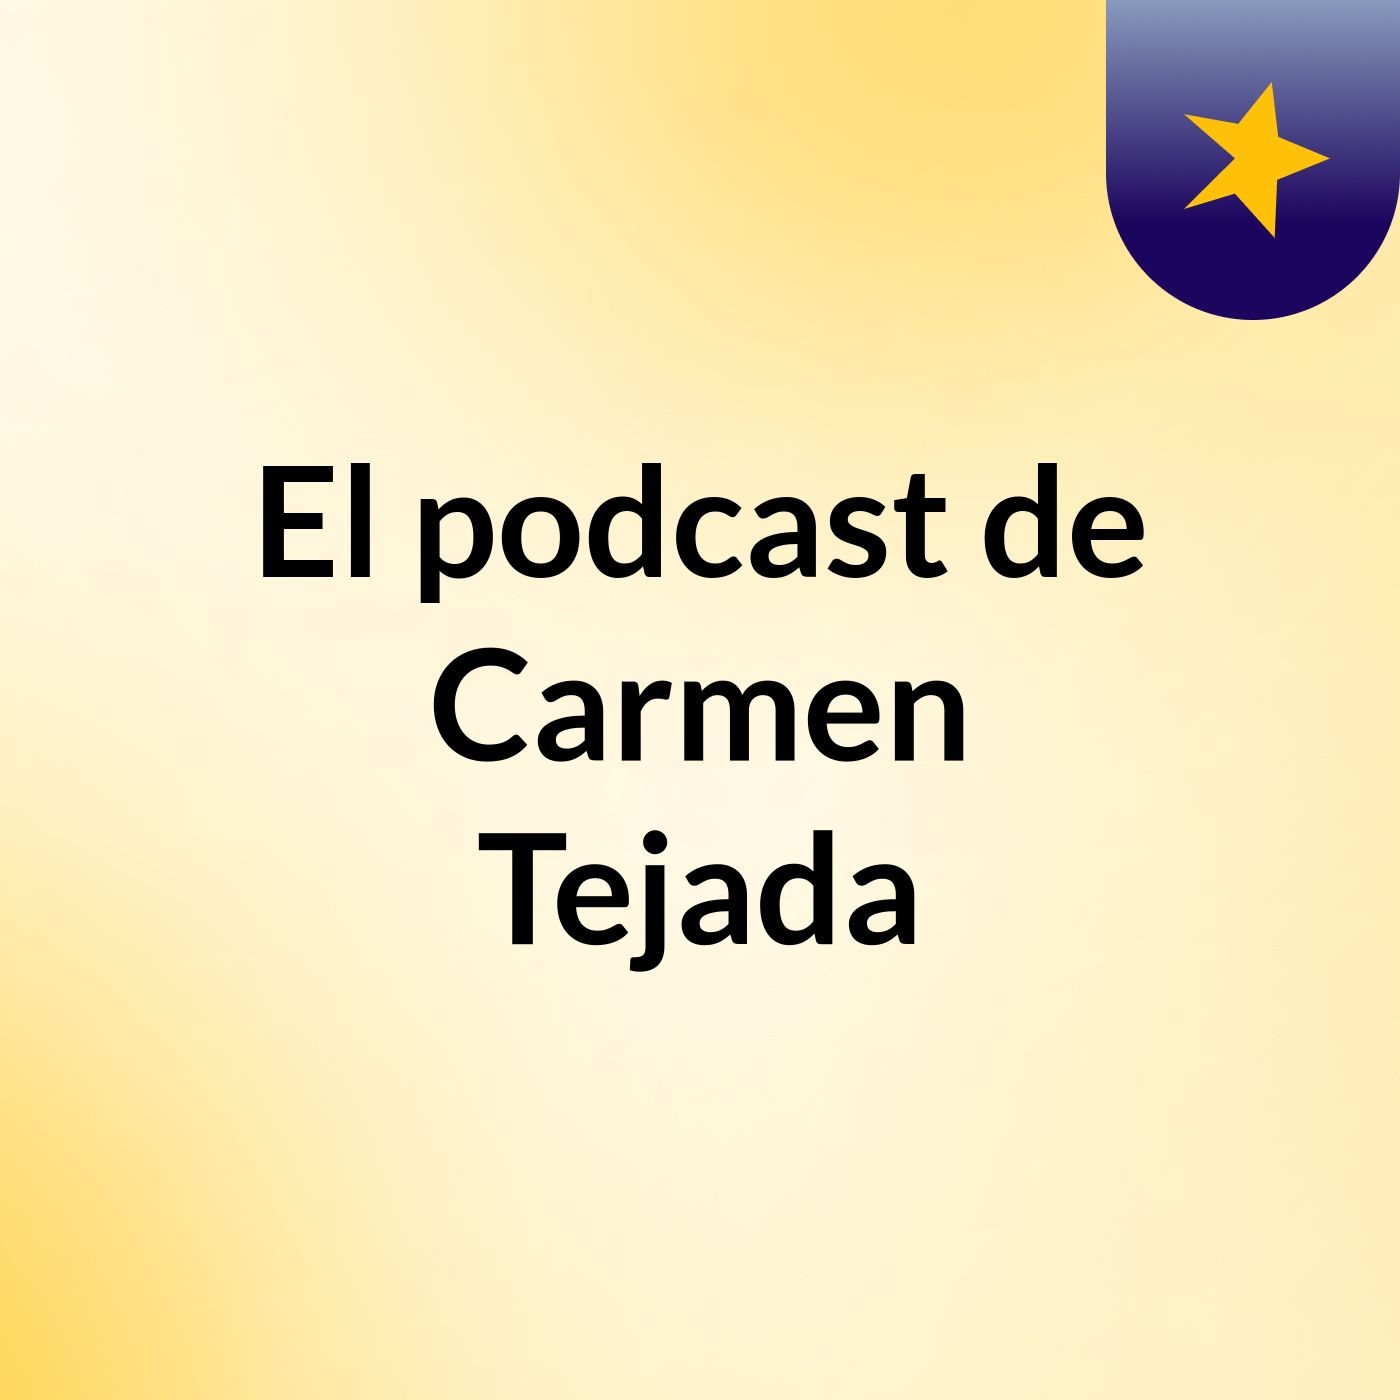 El podcast de Carmen Tejada